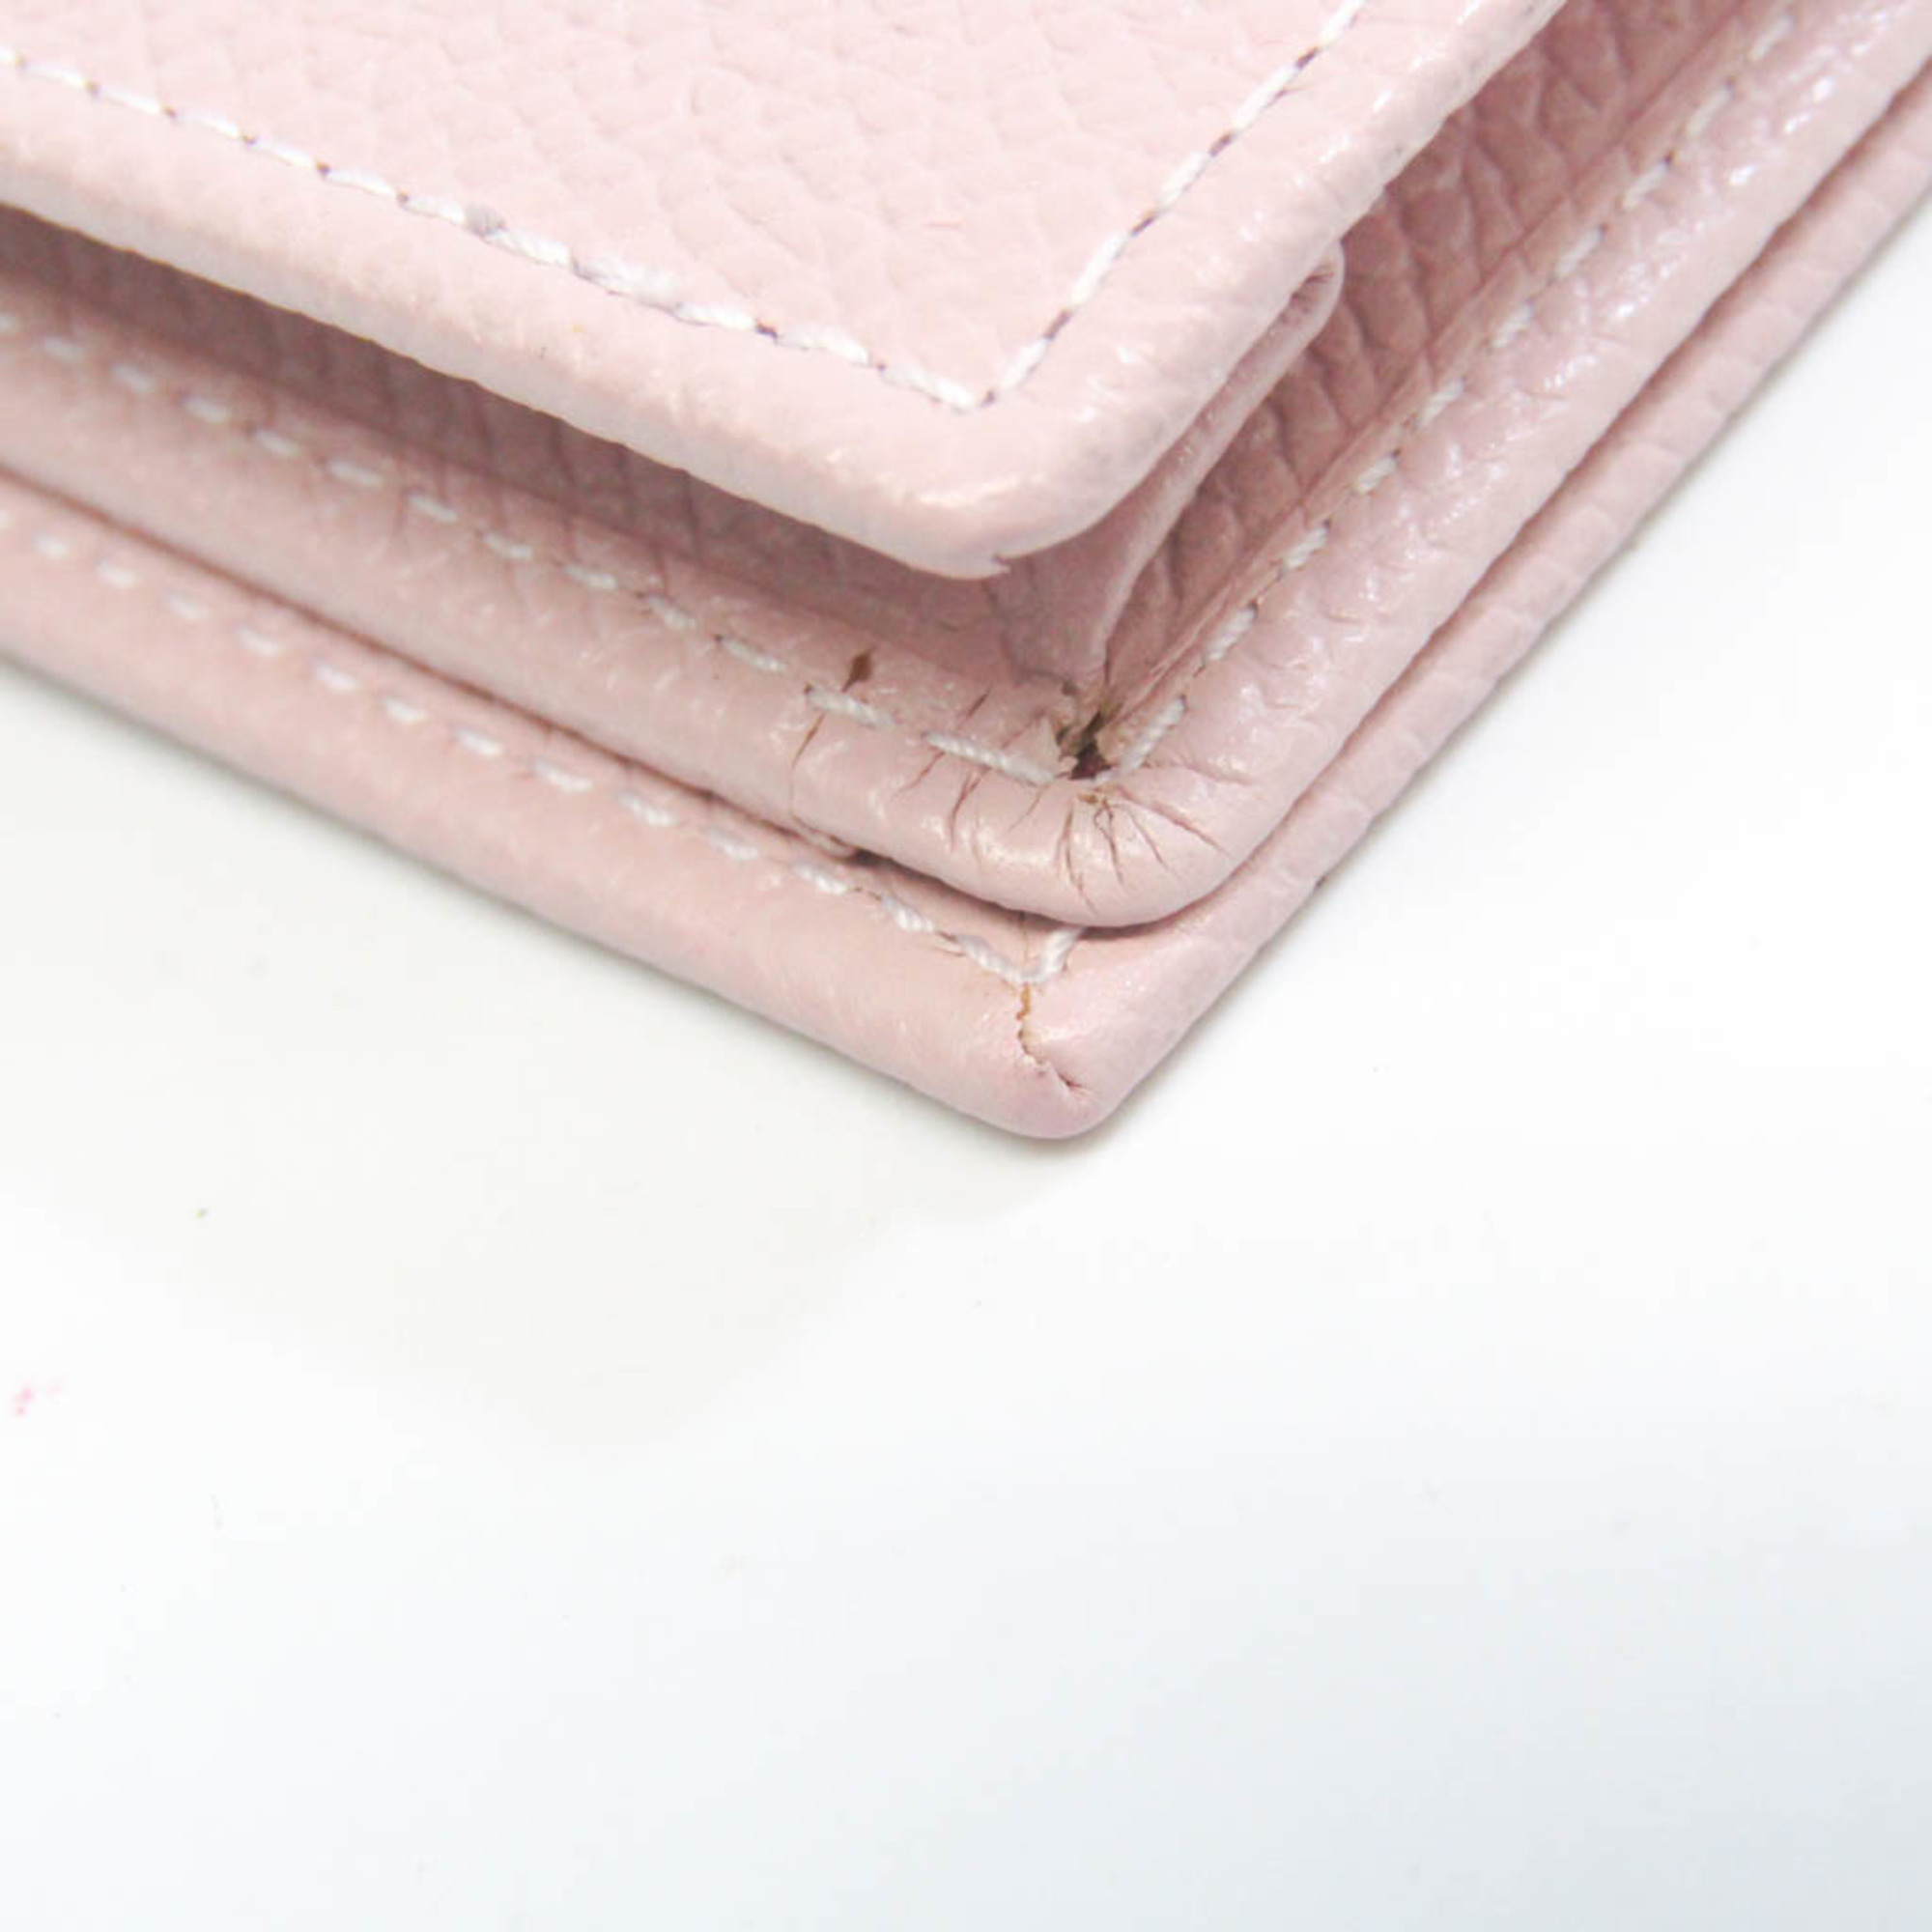 Bvlgari Bvlgari Bvlgari 30402 Leather Card Case Light Pink